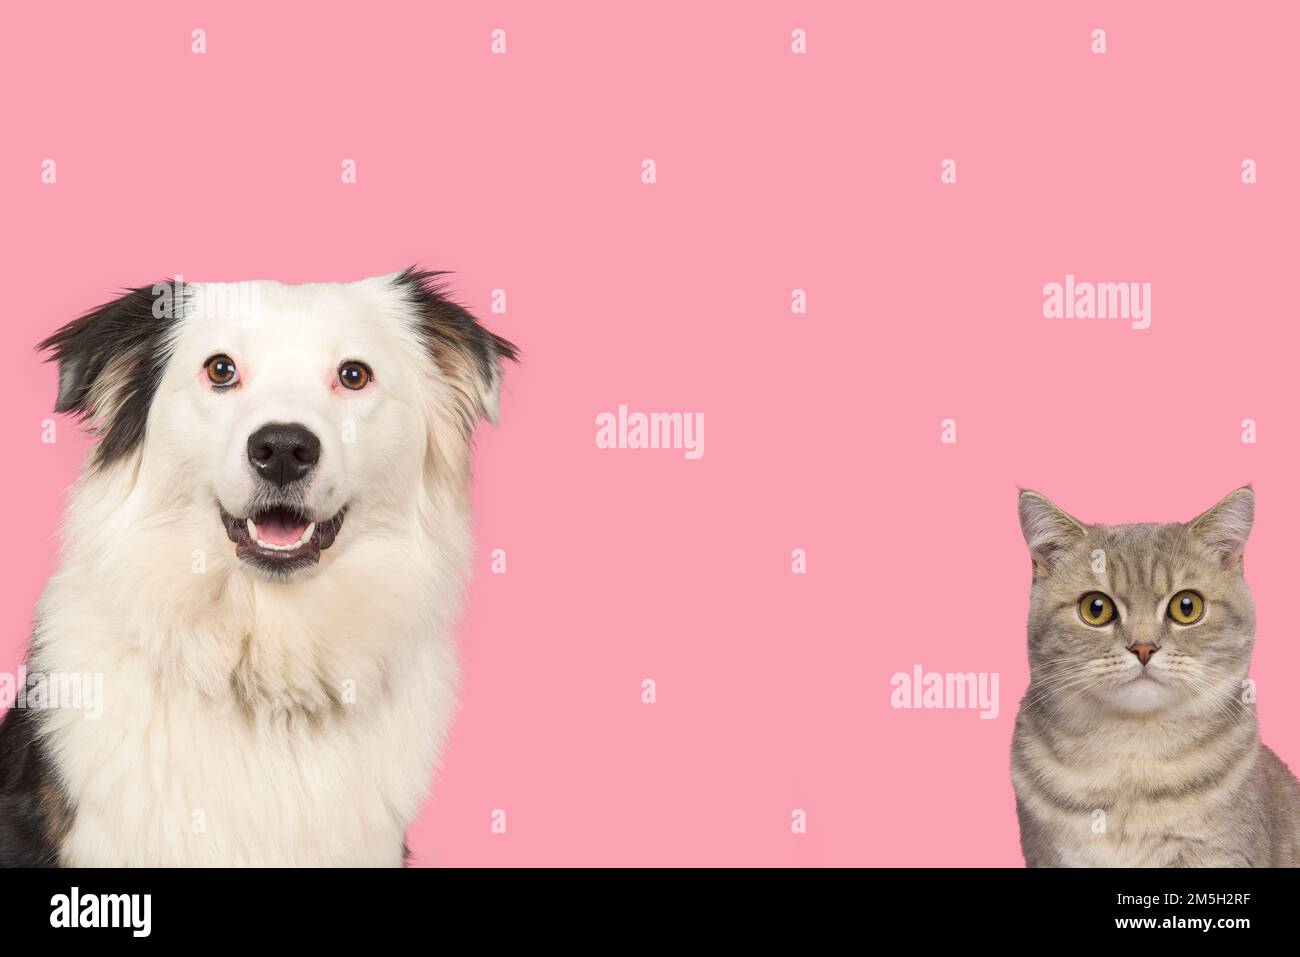 Porträt einer hübschen silbernen englischen Kurzhaarkatze und eines schwarz-weißen australischen Schäferhundes auf pinkfarbenem Hintergrund Stockfoto